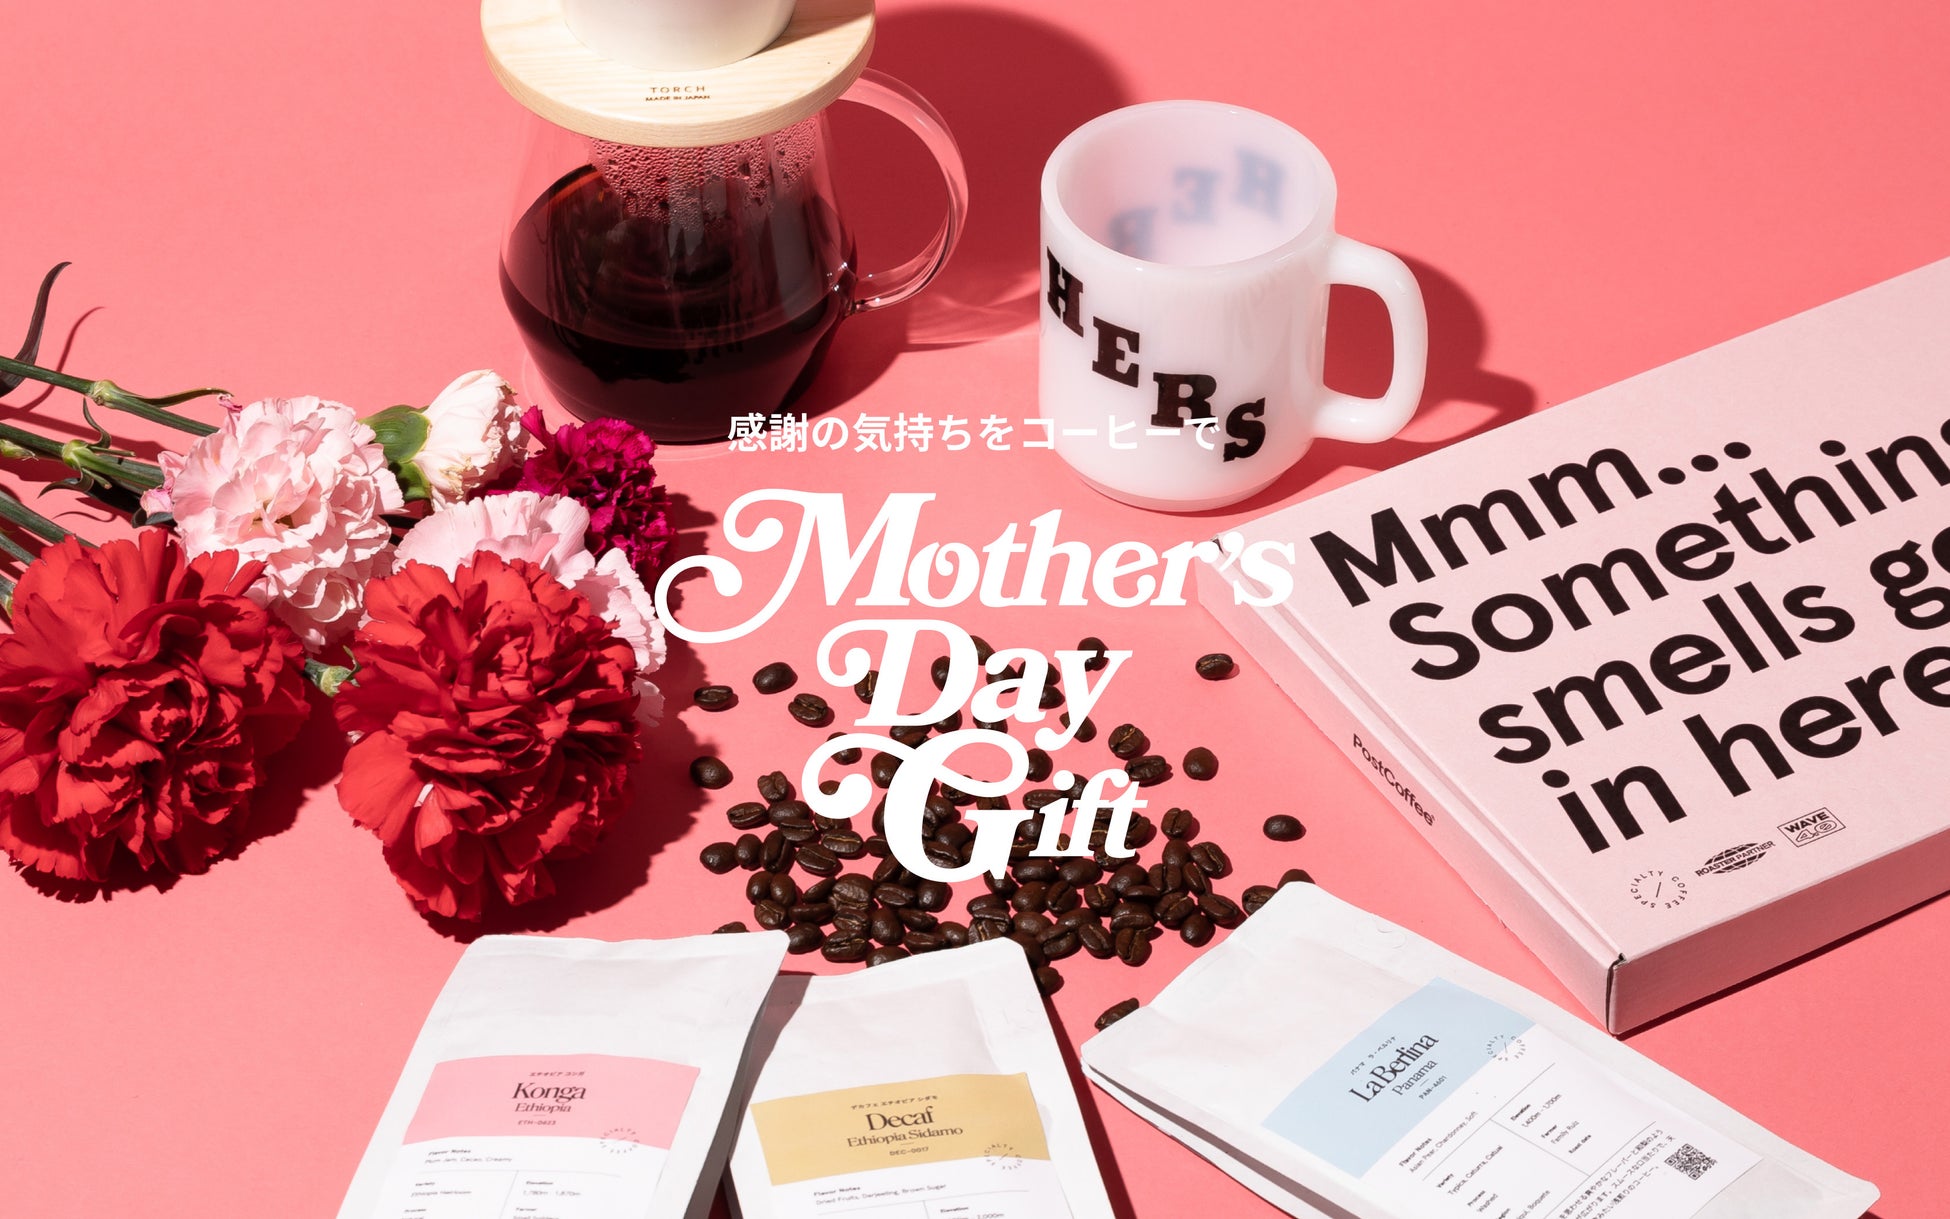 【数量限定】日本最大級のコーヒーショッピングモール「PostCoffee」が母の日コーヒーギフトの予約受付を開始